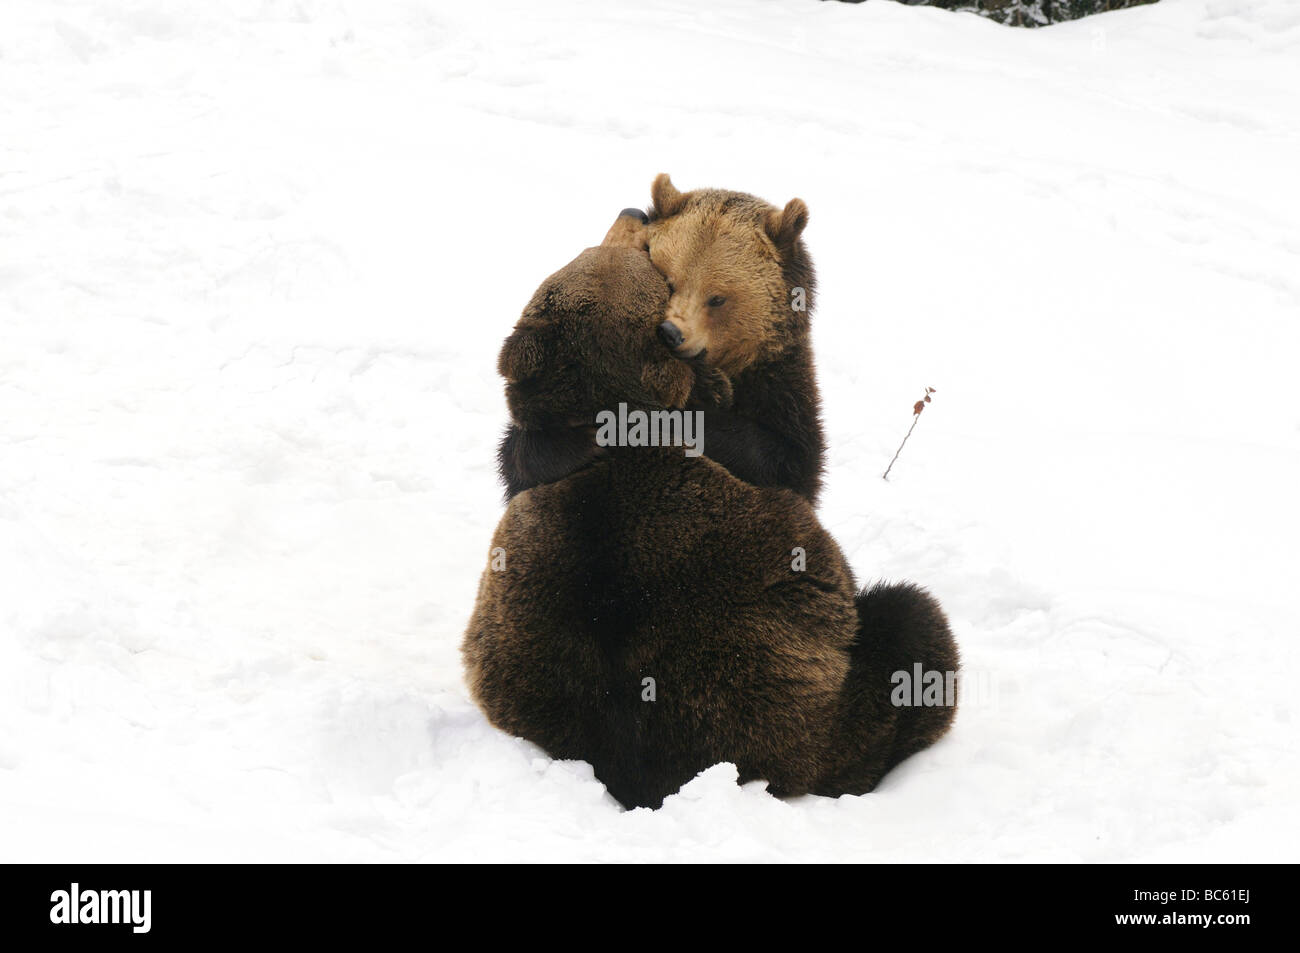 Deux ours bruns (Ursus arctos) jouent dans la neige, Parc National de la forêt bavaroise, Bavière, Allemagne Banque D'Images